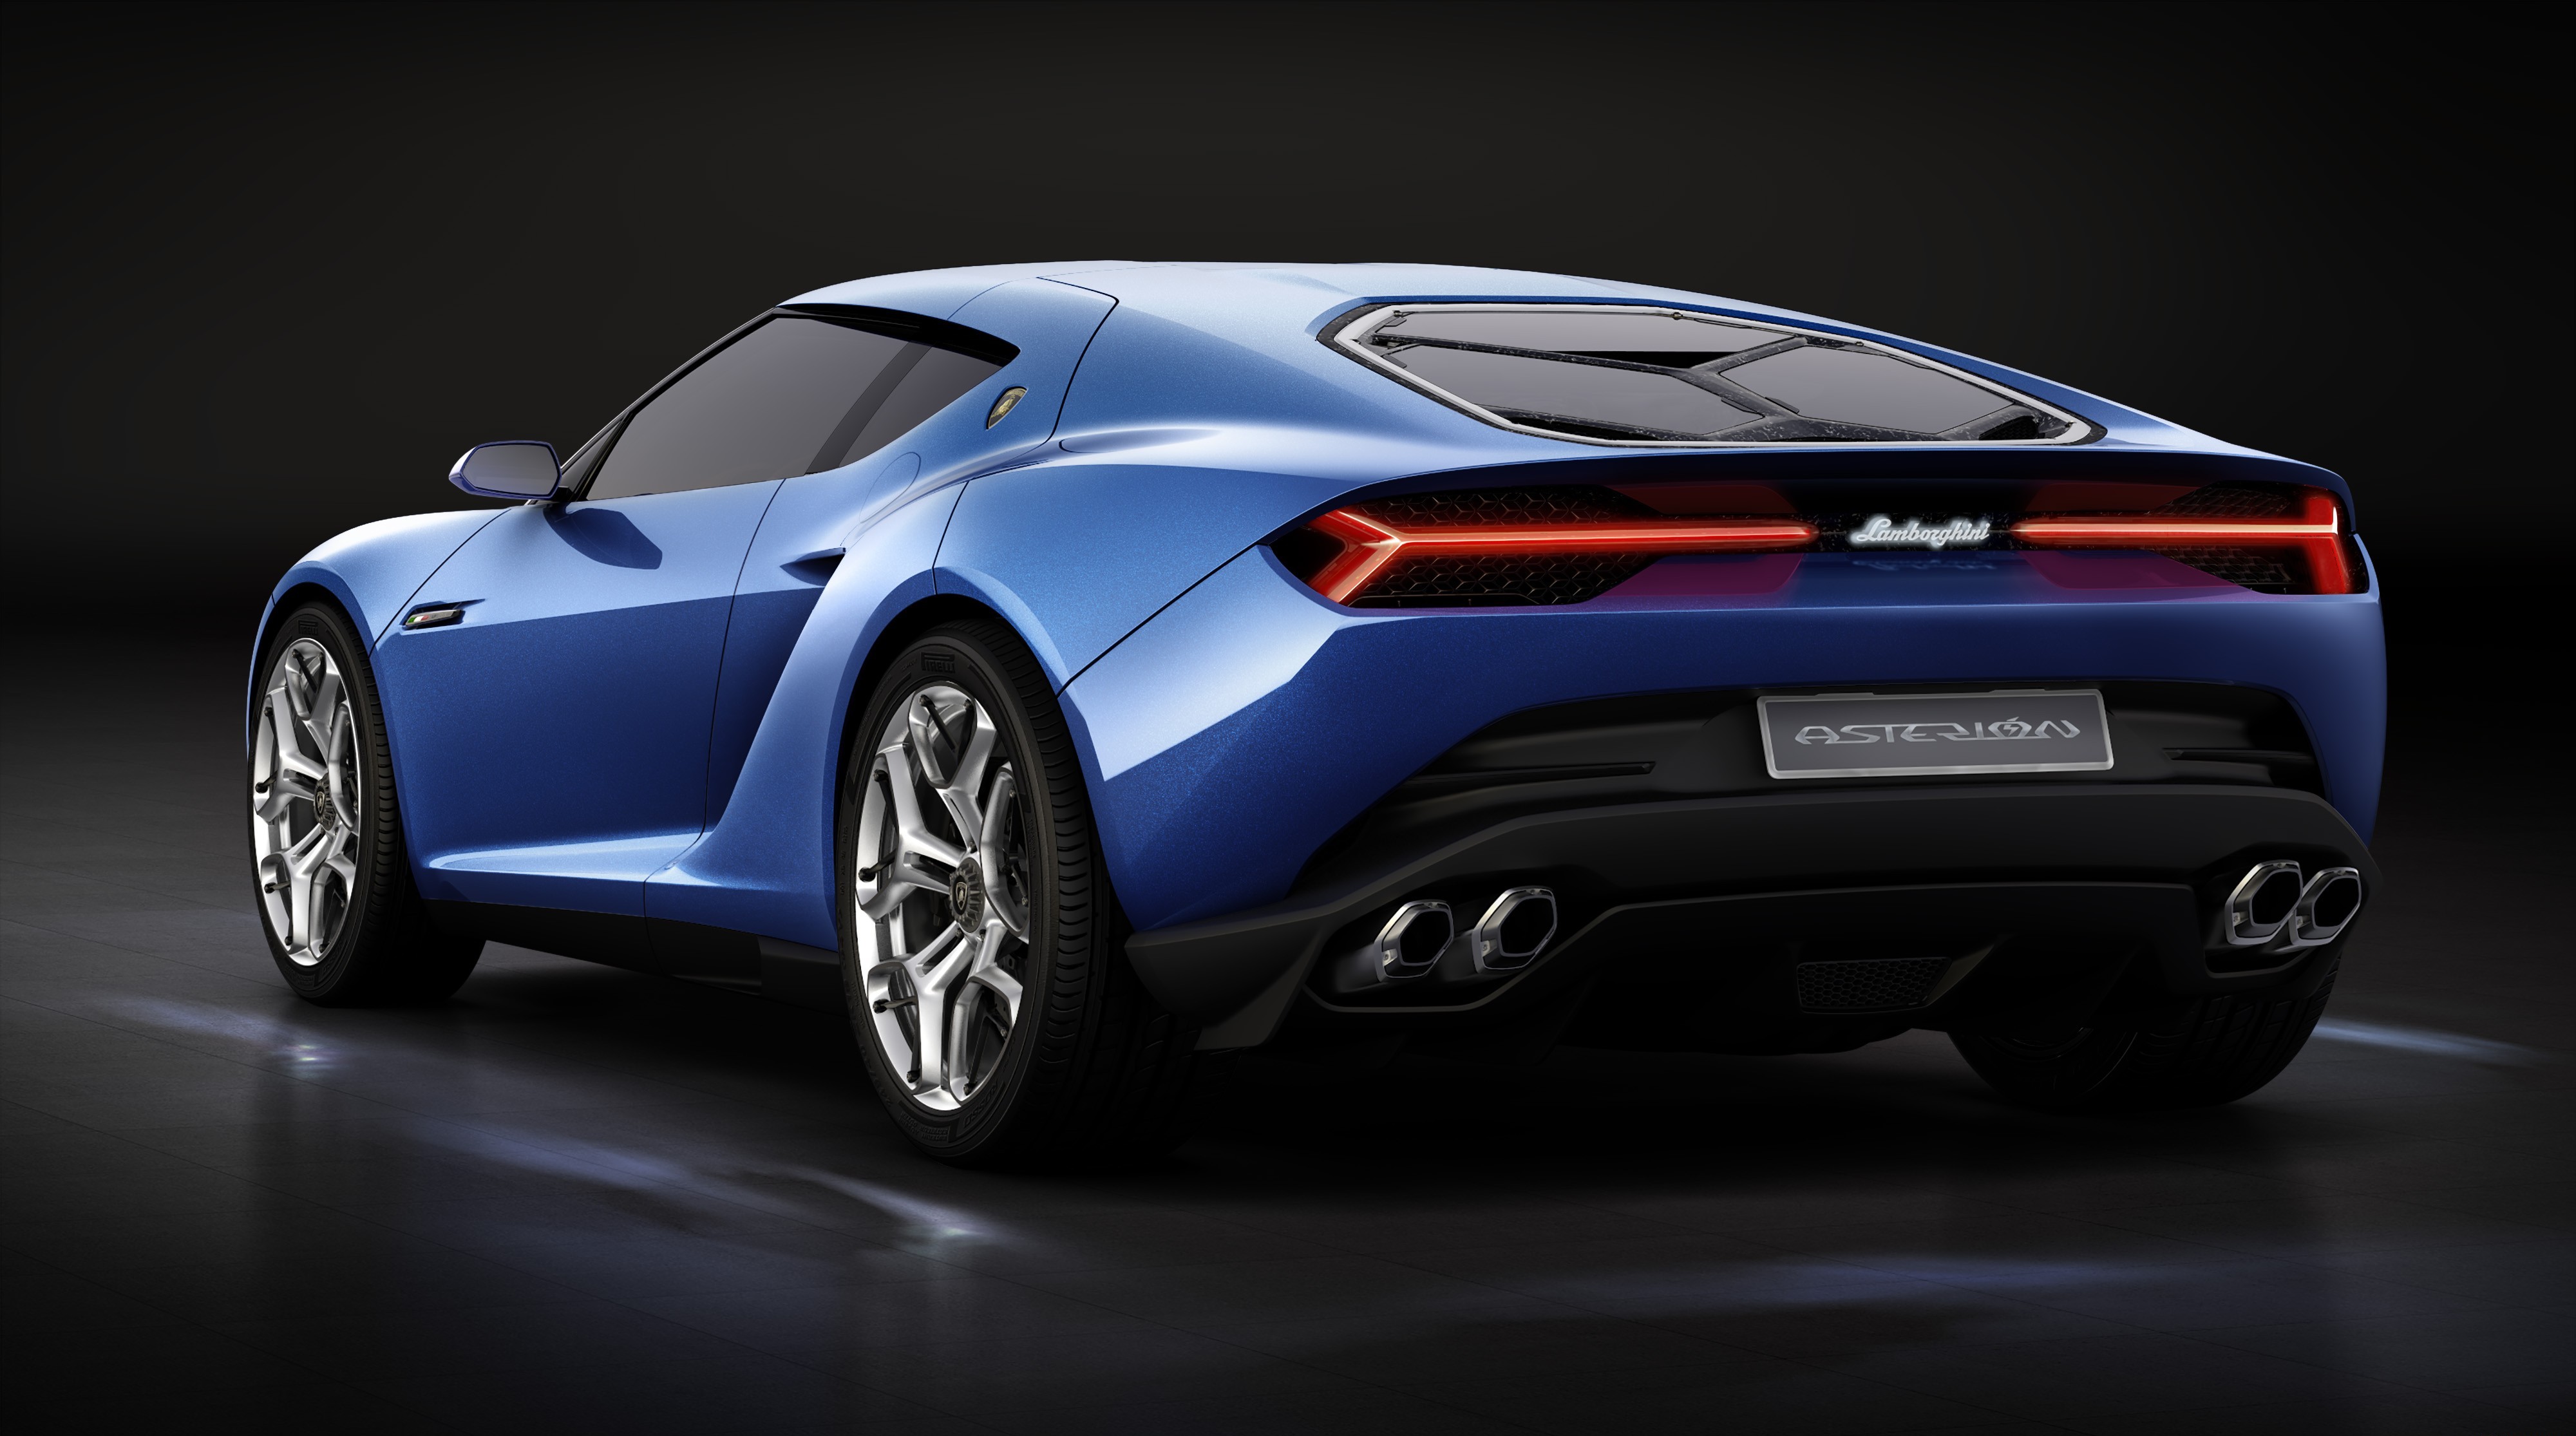 Lamborghini Asterion là một chiếc siêu xe hybrid đầy ấn tượng. Thiết kế của chiếc xe này không thể nào cứng nhắc hơn, với đường nét tinh tế và sắc nét. Động cơ mạnh mẽ và công nghệ hiện đại khiến chiếc xe trở thành một trong những siêu xe đáng chú ý nhất hiện nay. Xem hình ảnh để khám phá chiếc xe đầy cảm hứng này! 